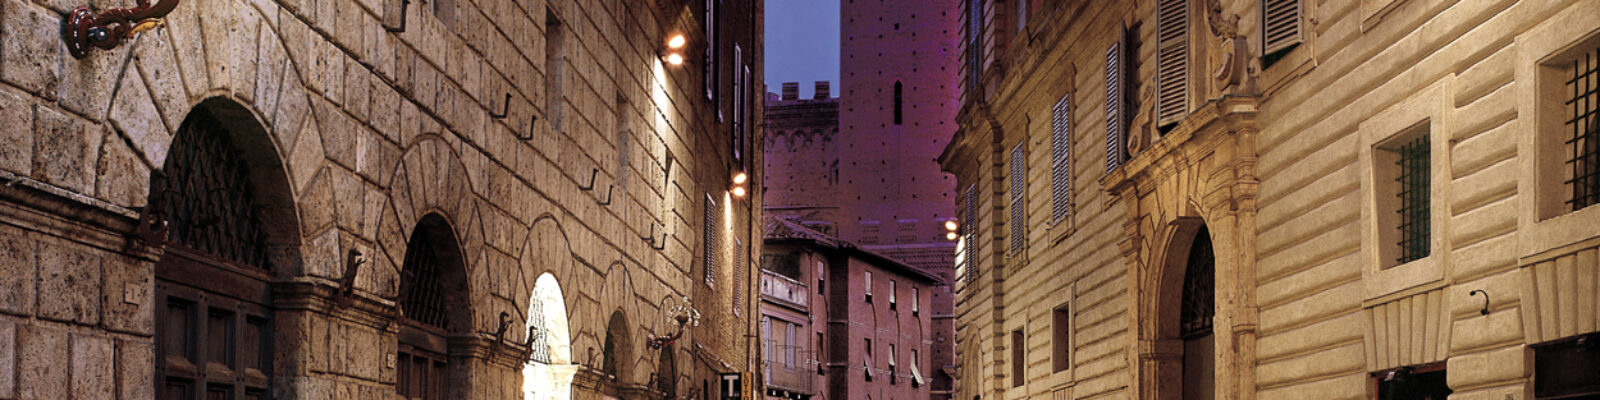 The historic center of Siena illuminated